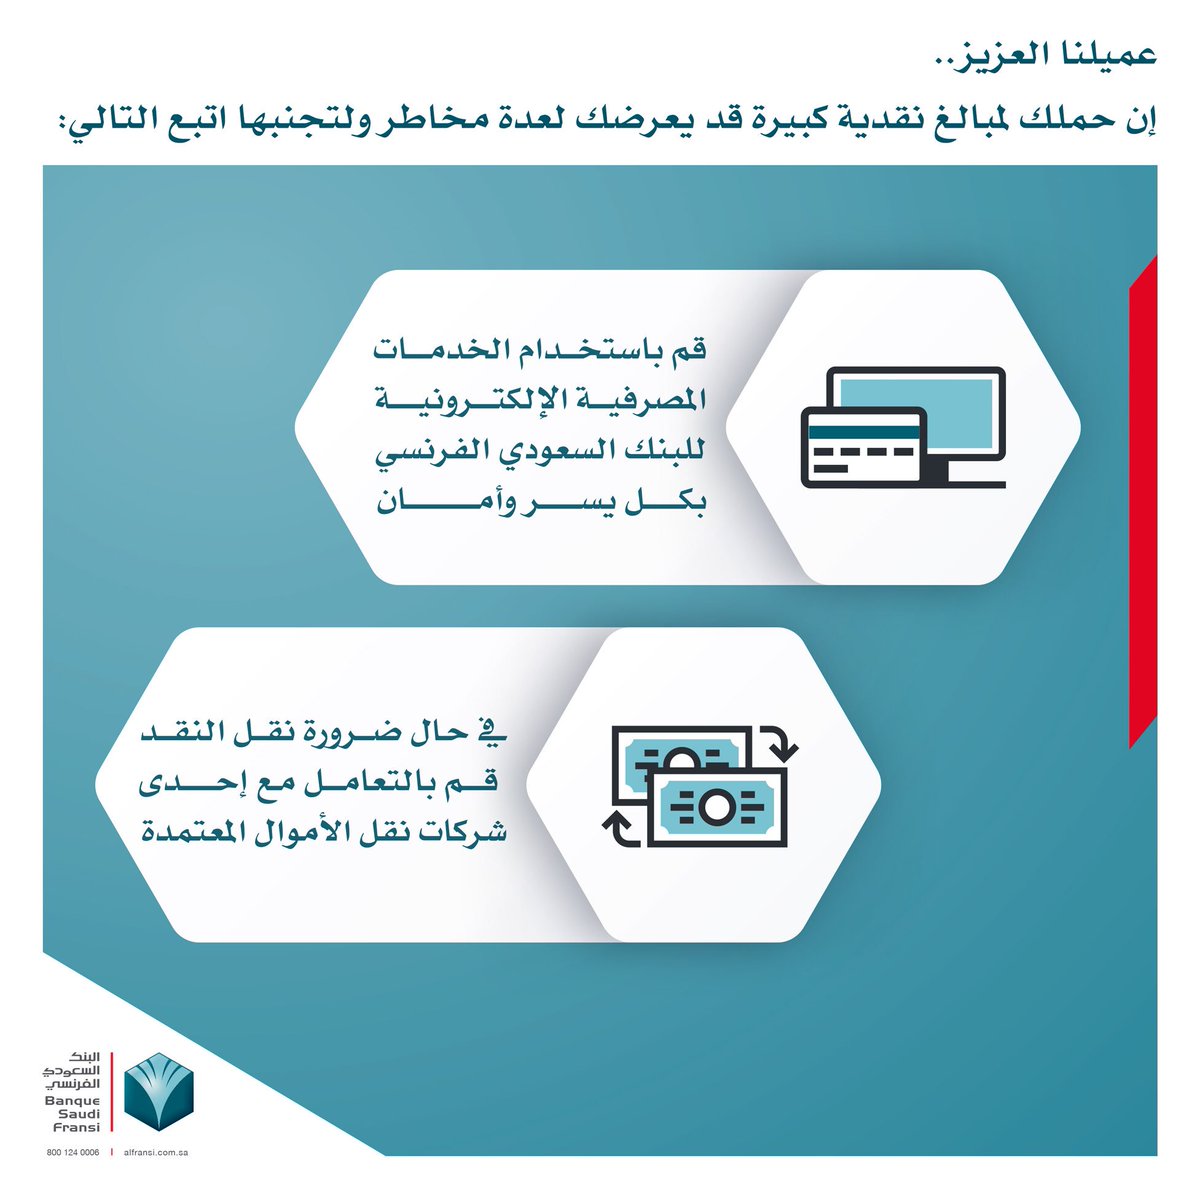 البنك السعودي الفرنسي A Twitter قم باستخدام الخدمات المصرفية الإلكترونية للبنك السعودي الفرنسي بكل يسر وأمان